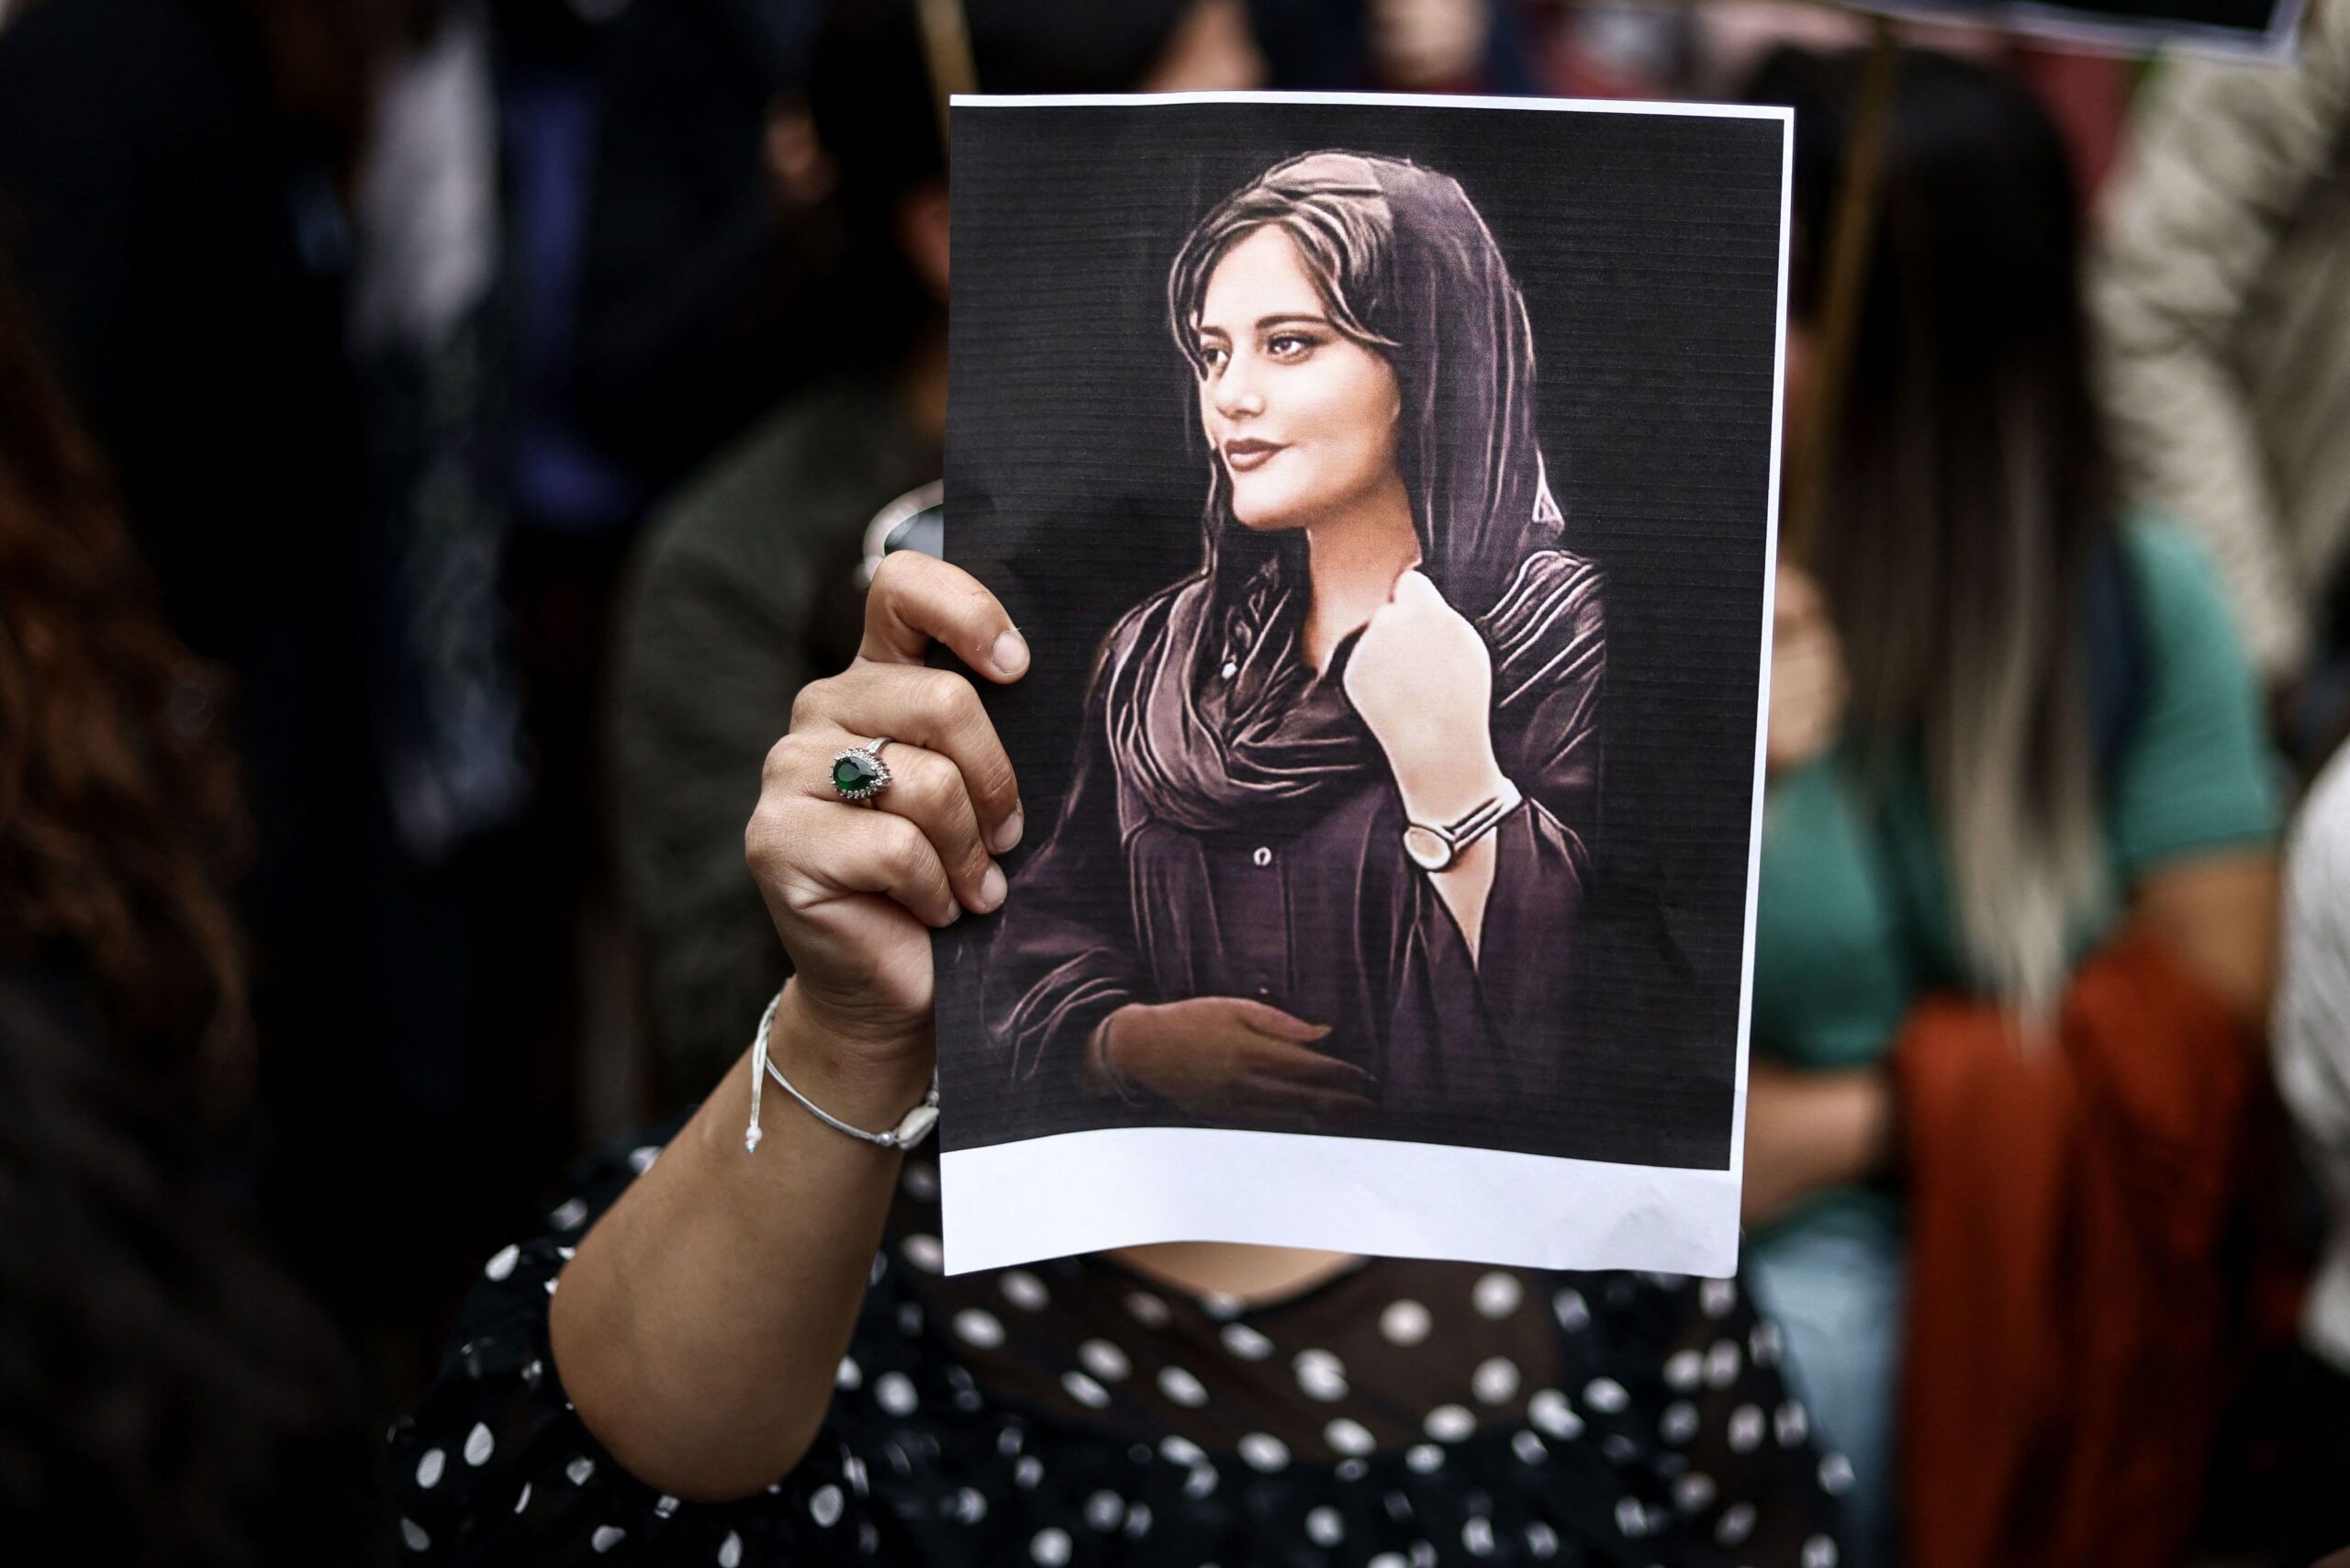 Iran un anno dopo: in memoria di Mahsa Amini simbolo di libertà